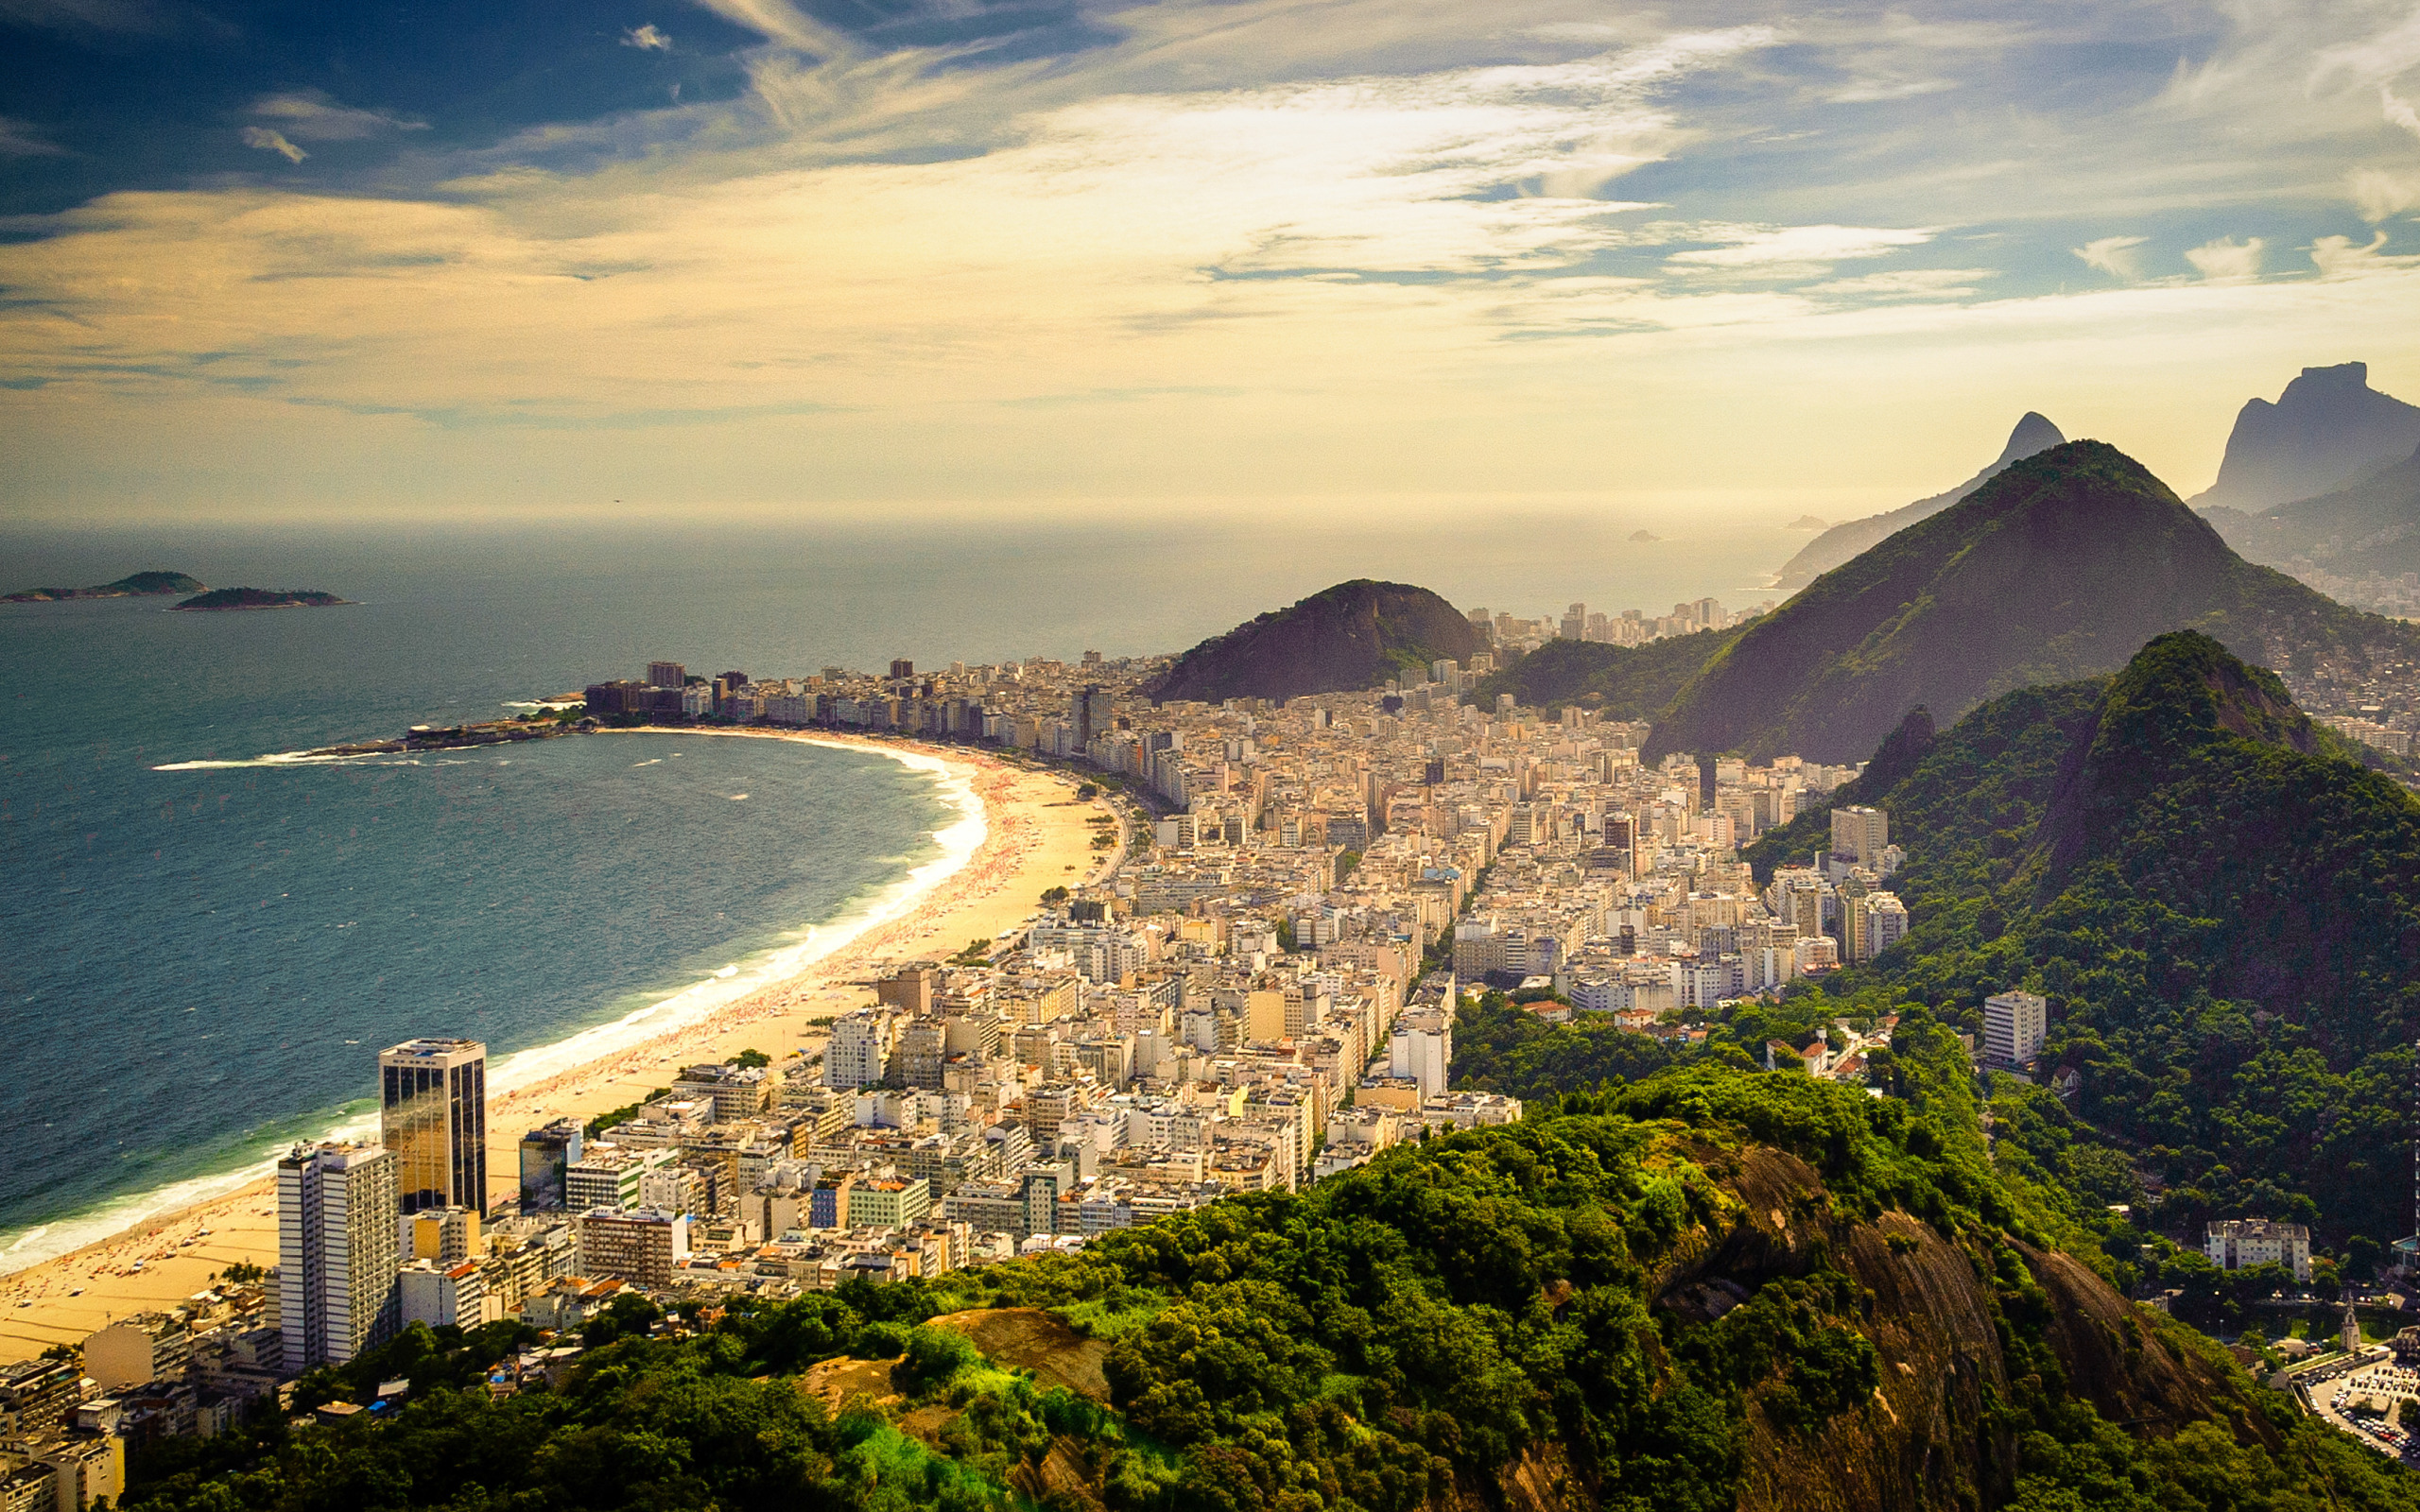 Бразилия самый красивый. Бразилия Рио де Жанейро. Рио-де-Жанейро (город в Бразилии). Копакабана, Рио-де-Жанейро, Бразилия. Южная Америка Рио де Жанейро.